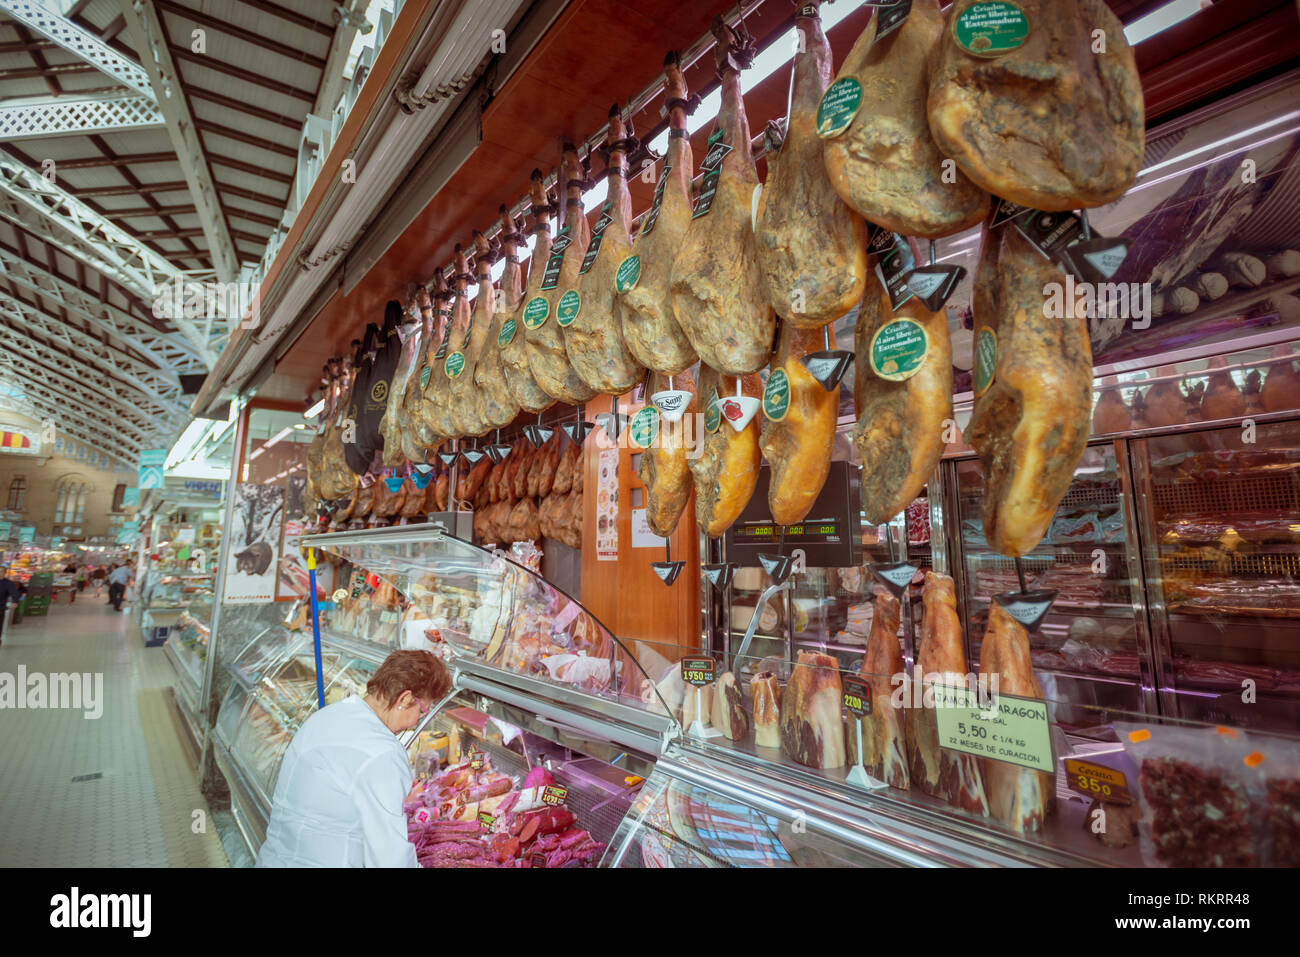 Jamón Serrano - spanischen Schinken, trocken gepökelt, hängend an einem Metzger Markt in der zentralen Markt, Mercado Central, in Valencia, Spanien. Stockfoto